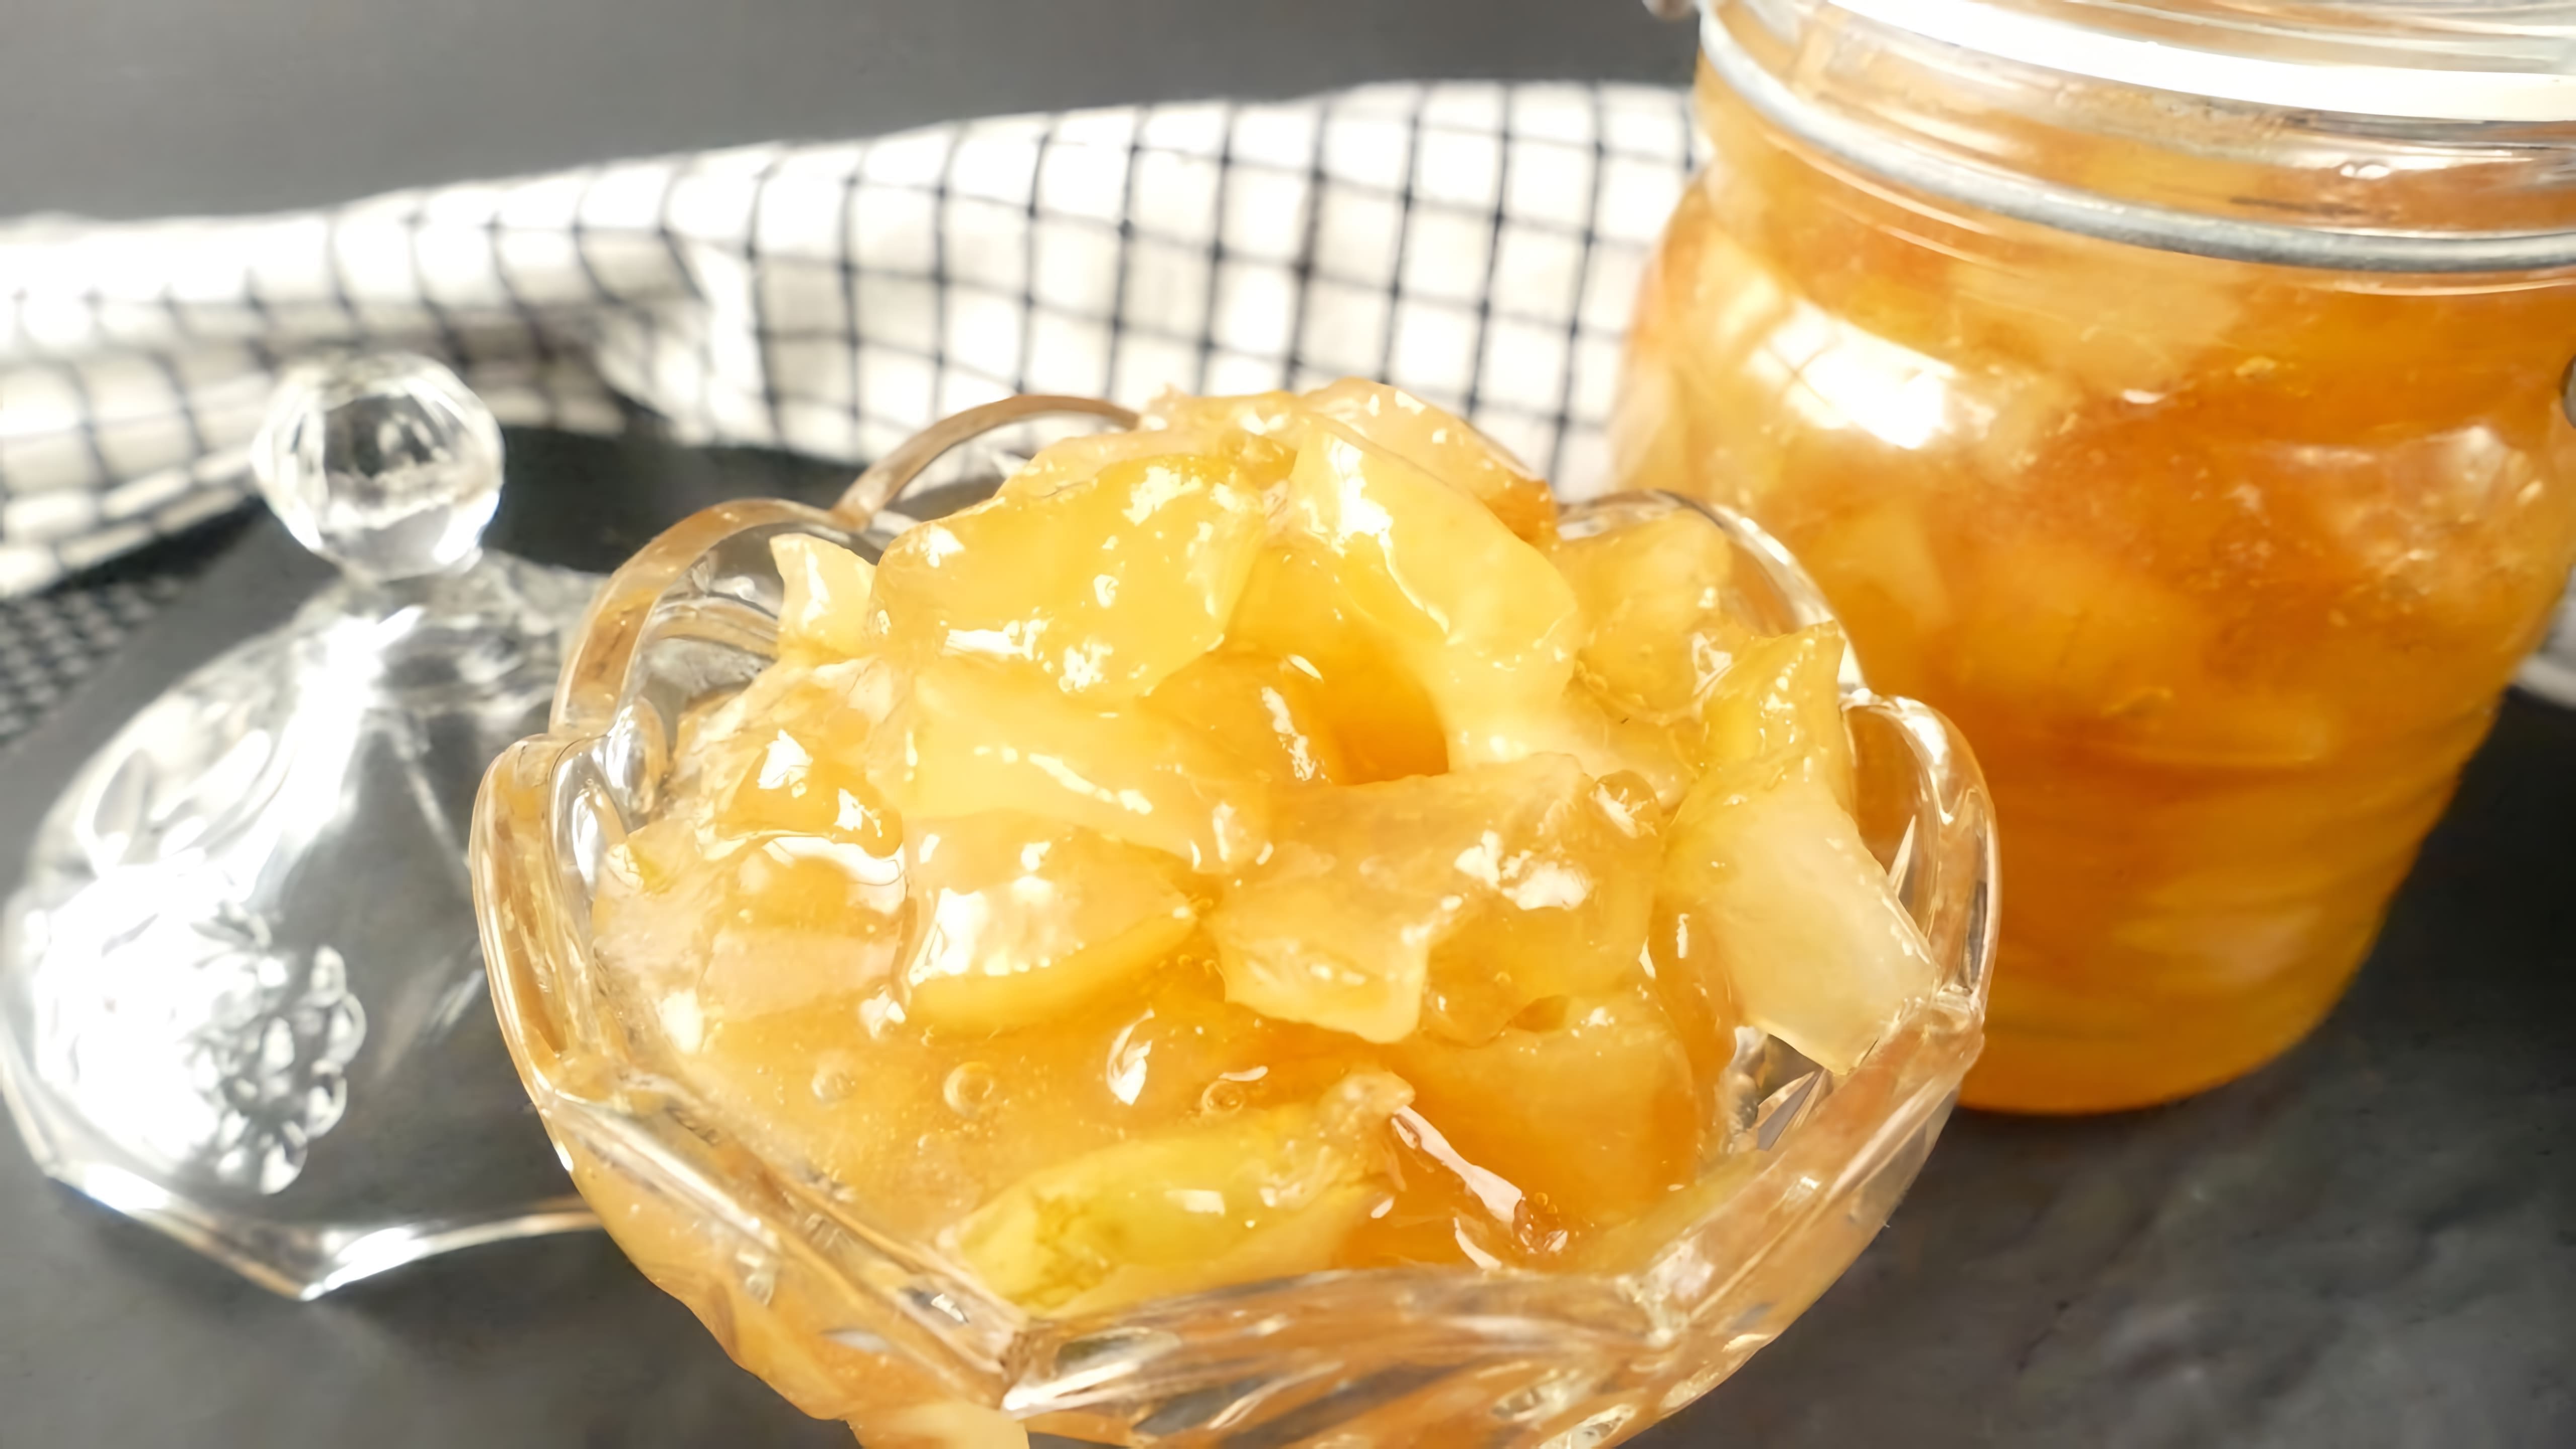 Видео рецепт для приготовления густого яблочного джема без добавления загустителей всего за 20 минут